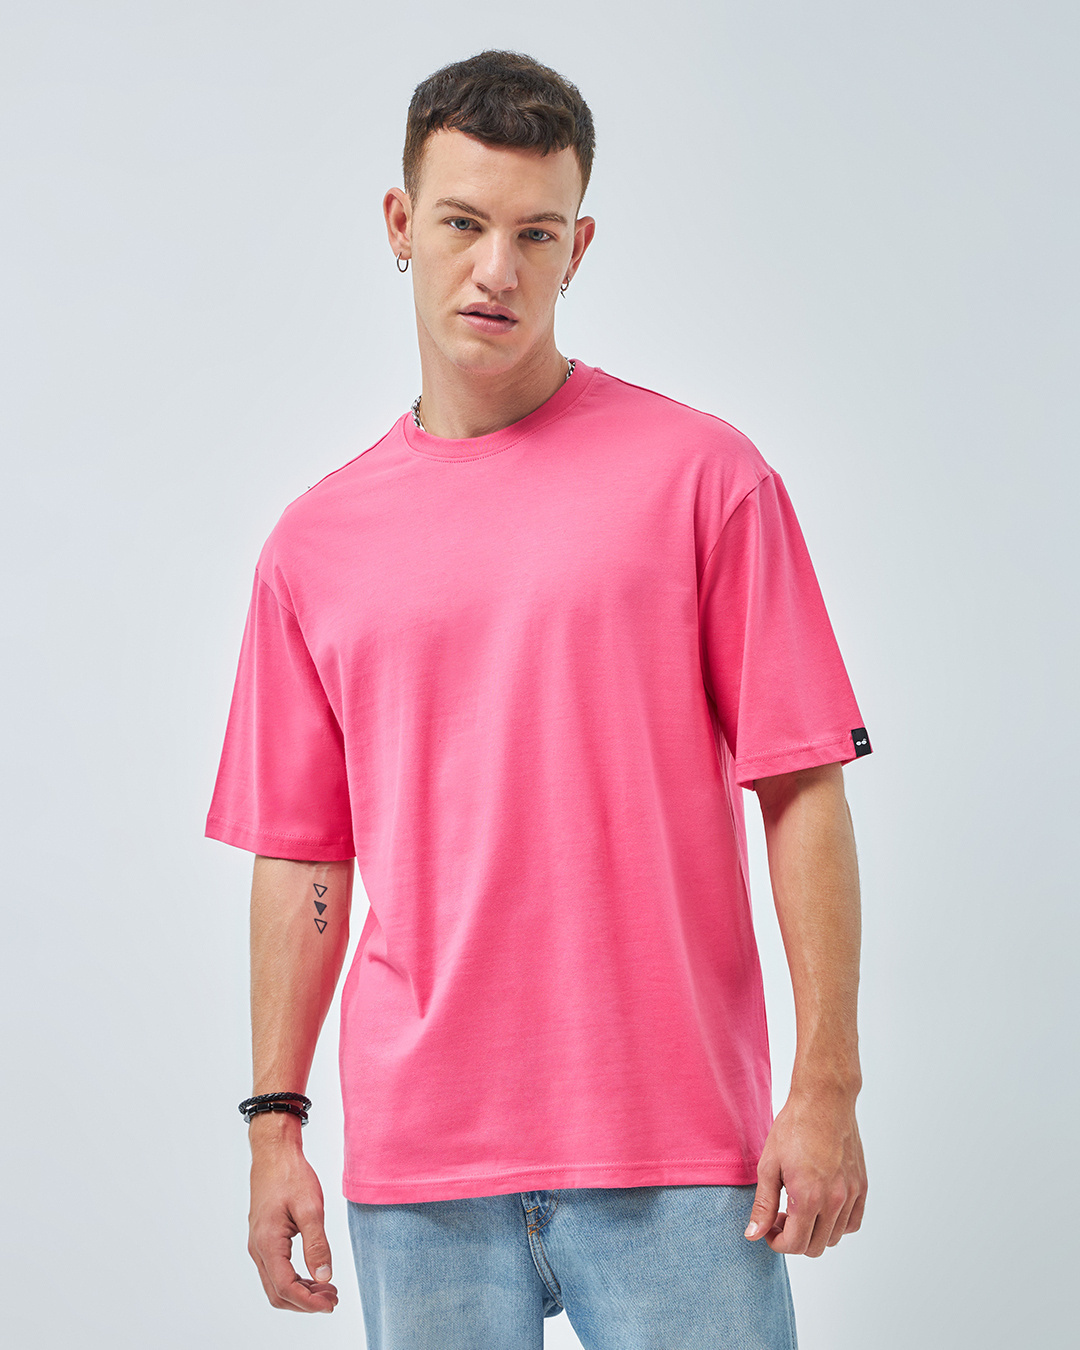 Buy Men's Pink Oversized T-shirt Online at Bewakoof